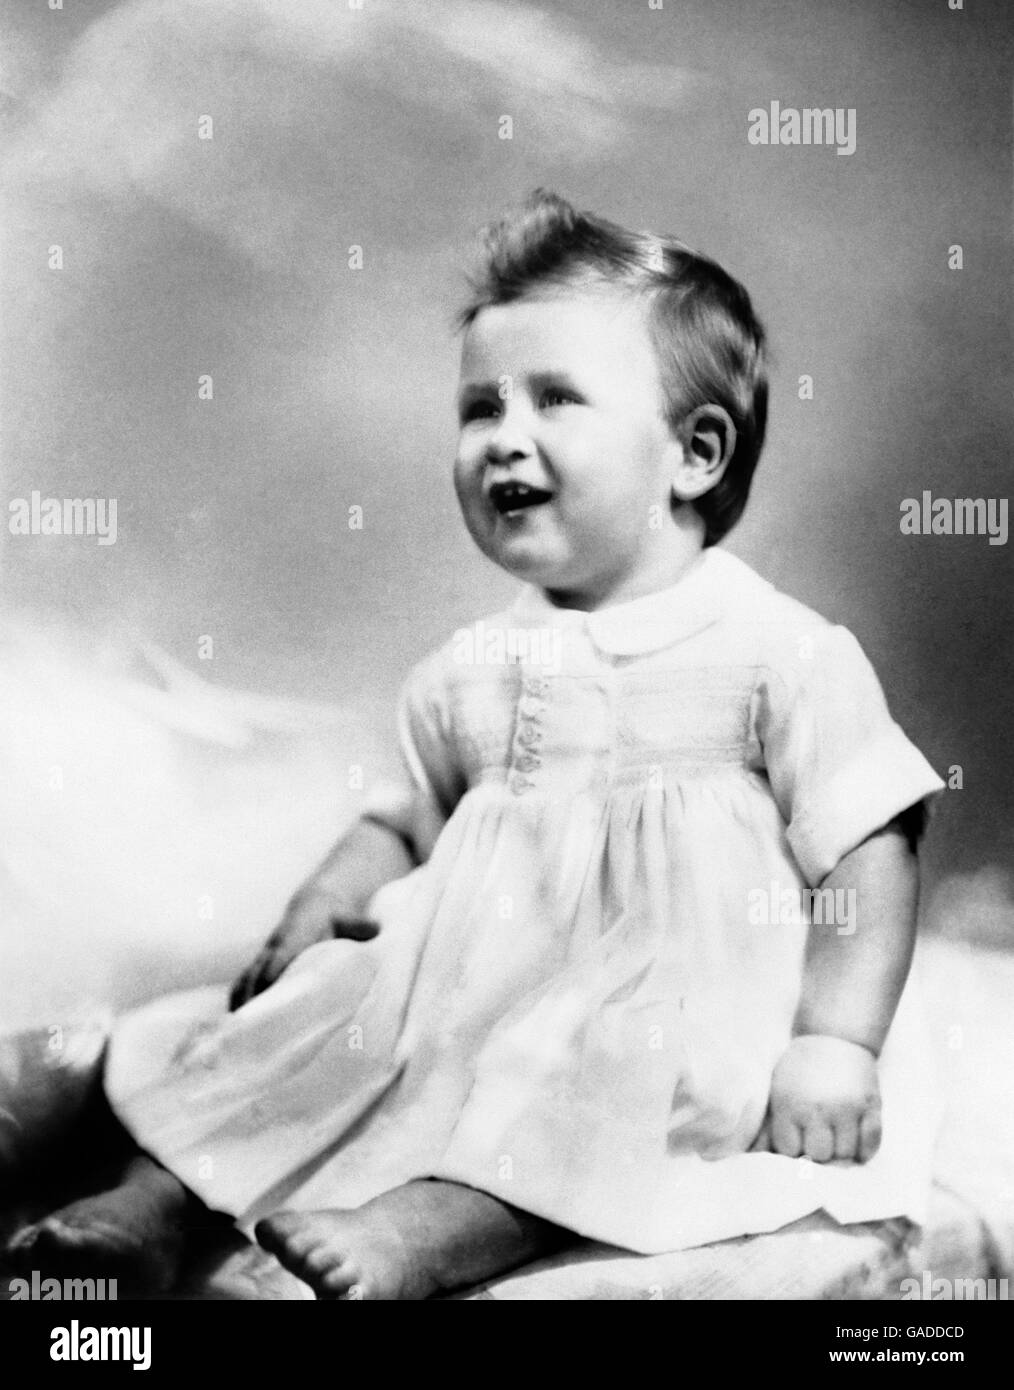 Il principe Carlo figlio della principessa Elisabetta e del duca di Edimburgo, fu preso per il suo primo compleanno. A 11 1/2 mesi il principe del bambino pesò 24 1/2 libbre ed aveva 6 denti e poteva camminare alcuni punti che tenevano sulla sua penna del gioco. Foto Stock